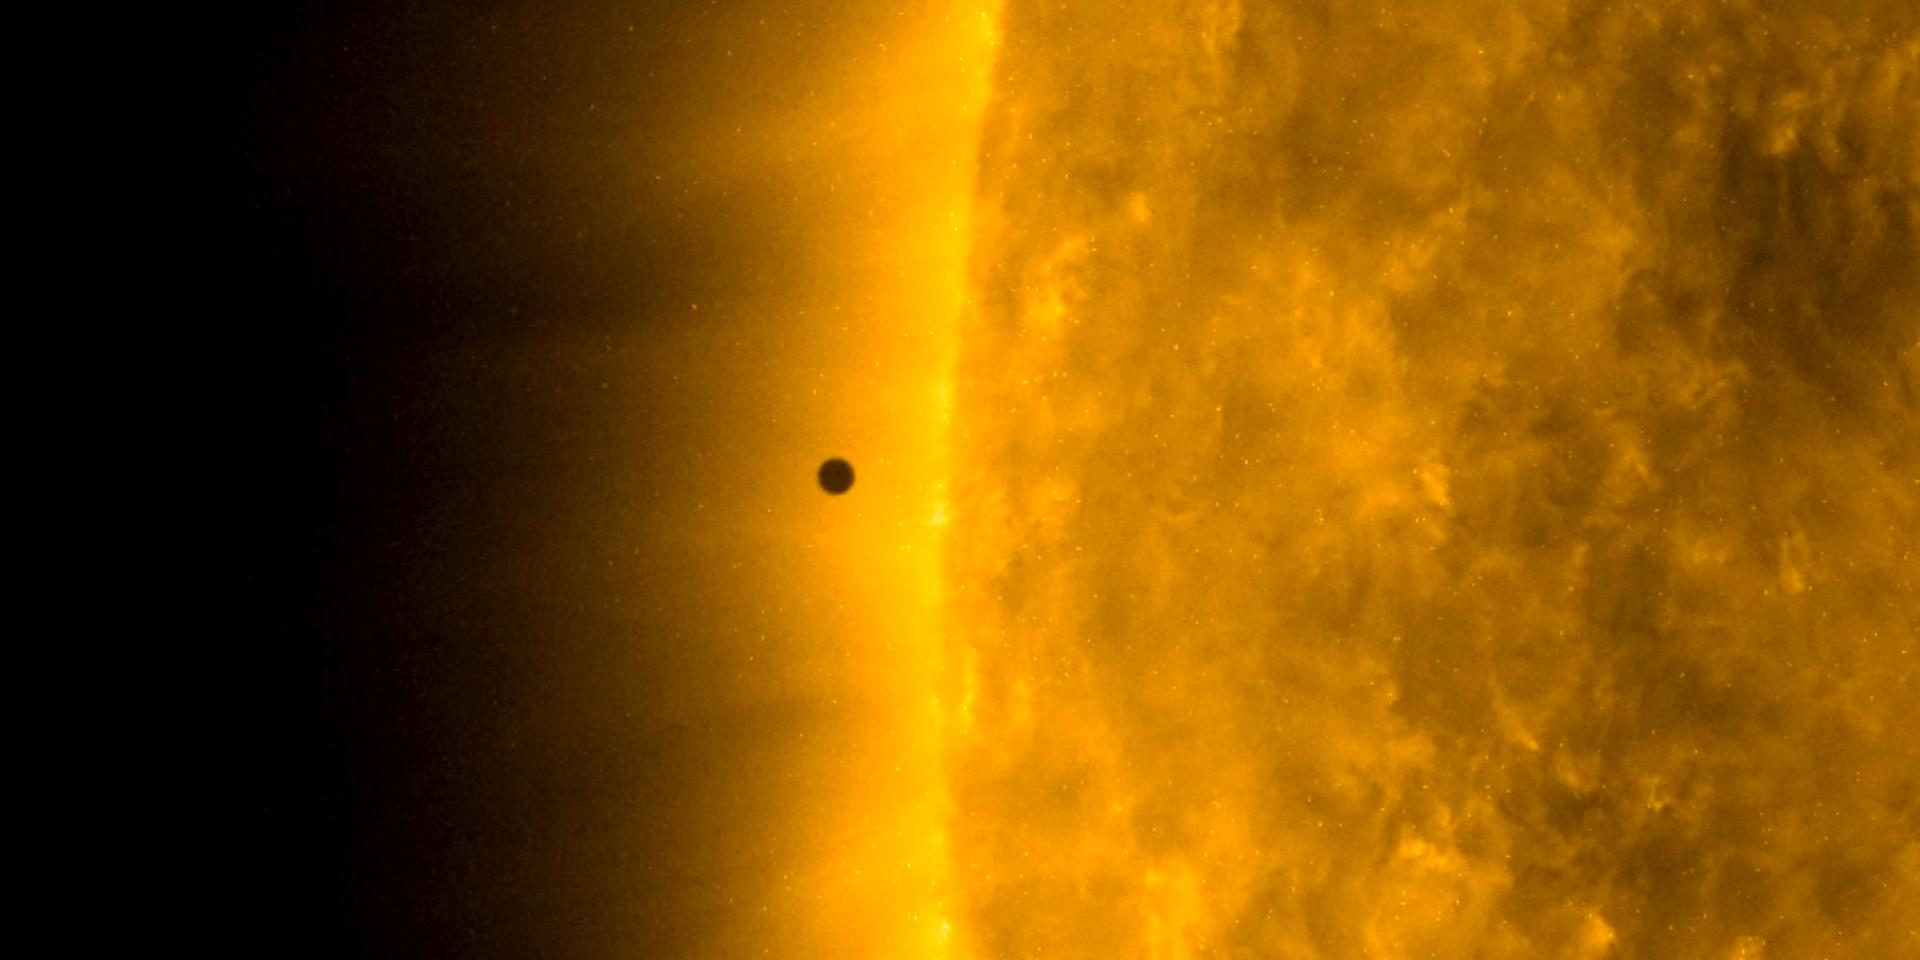 Den nya planeten har vissa likheter med Merkurius, som på den här bilden syns som den svarta cirkeln nära solen.